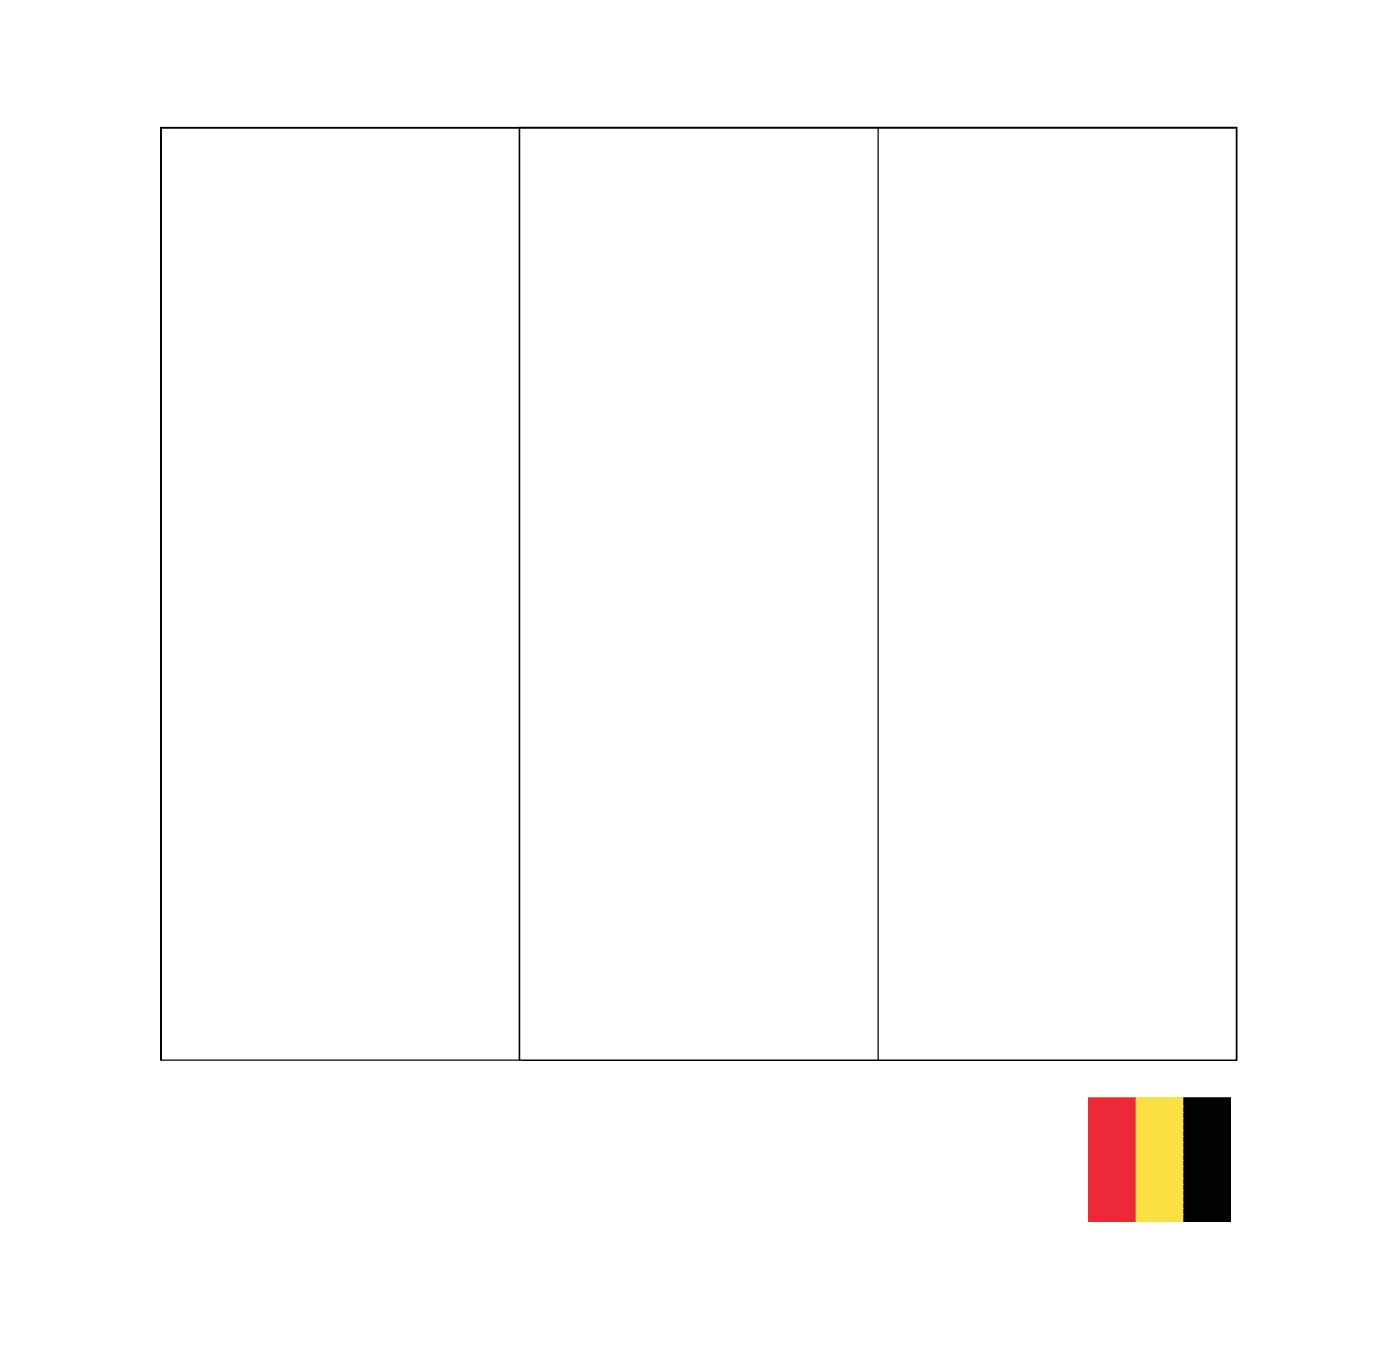  أعلام بلجيكا 